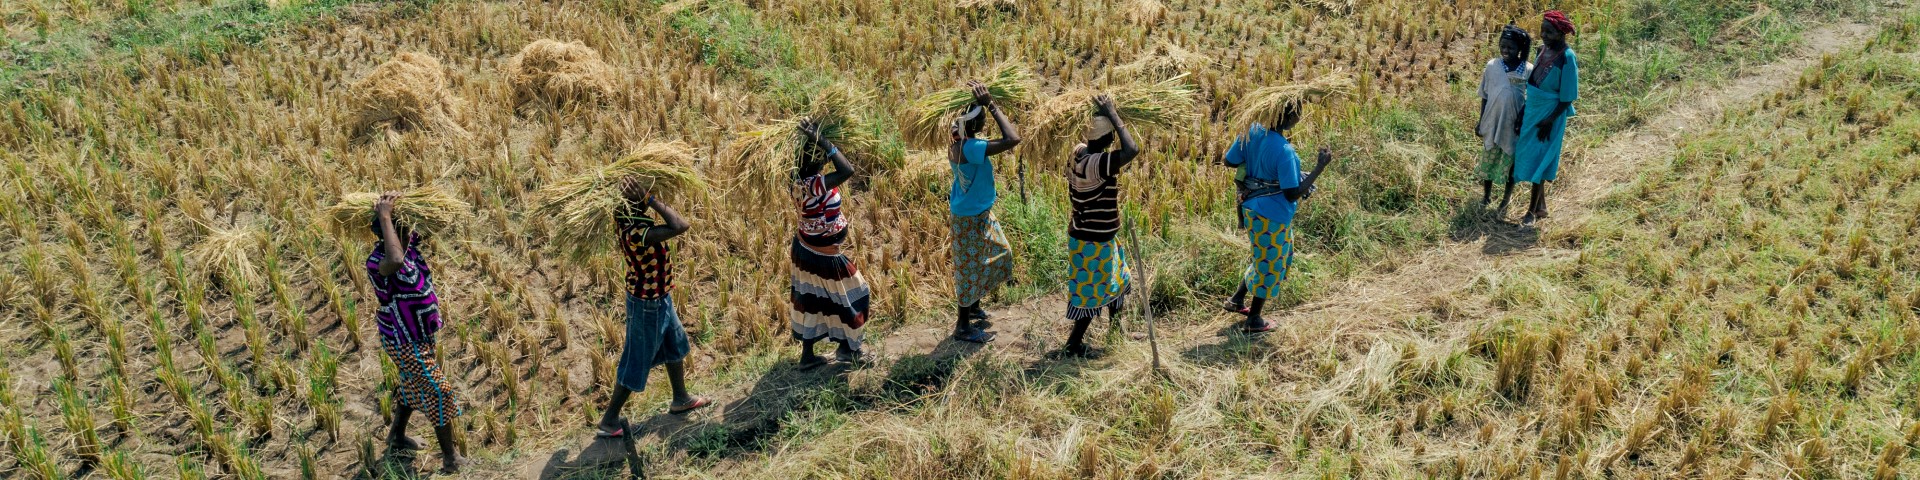 Menschen tragen geerntetes Getreide von einem Feld. © GIZ / Ollivier Girard